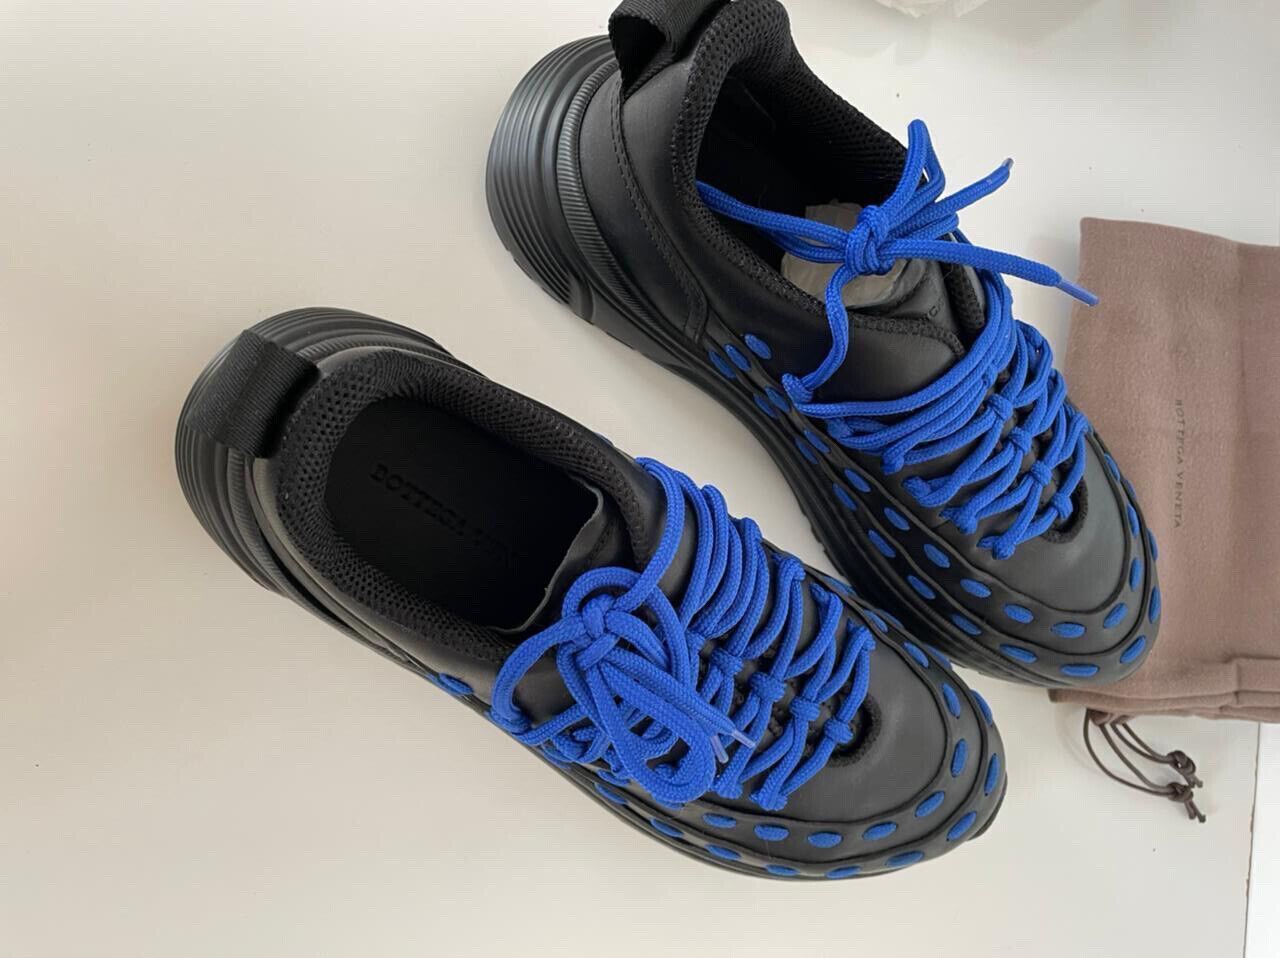 NIB 950 $ Bottega Veneta Herren-Sneaker aus Leder in Schwarz/Blau 9,5 US 578305 1014 